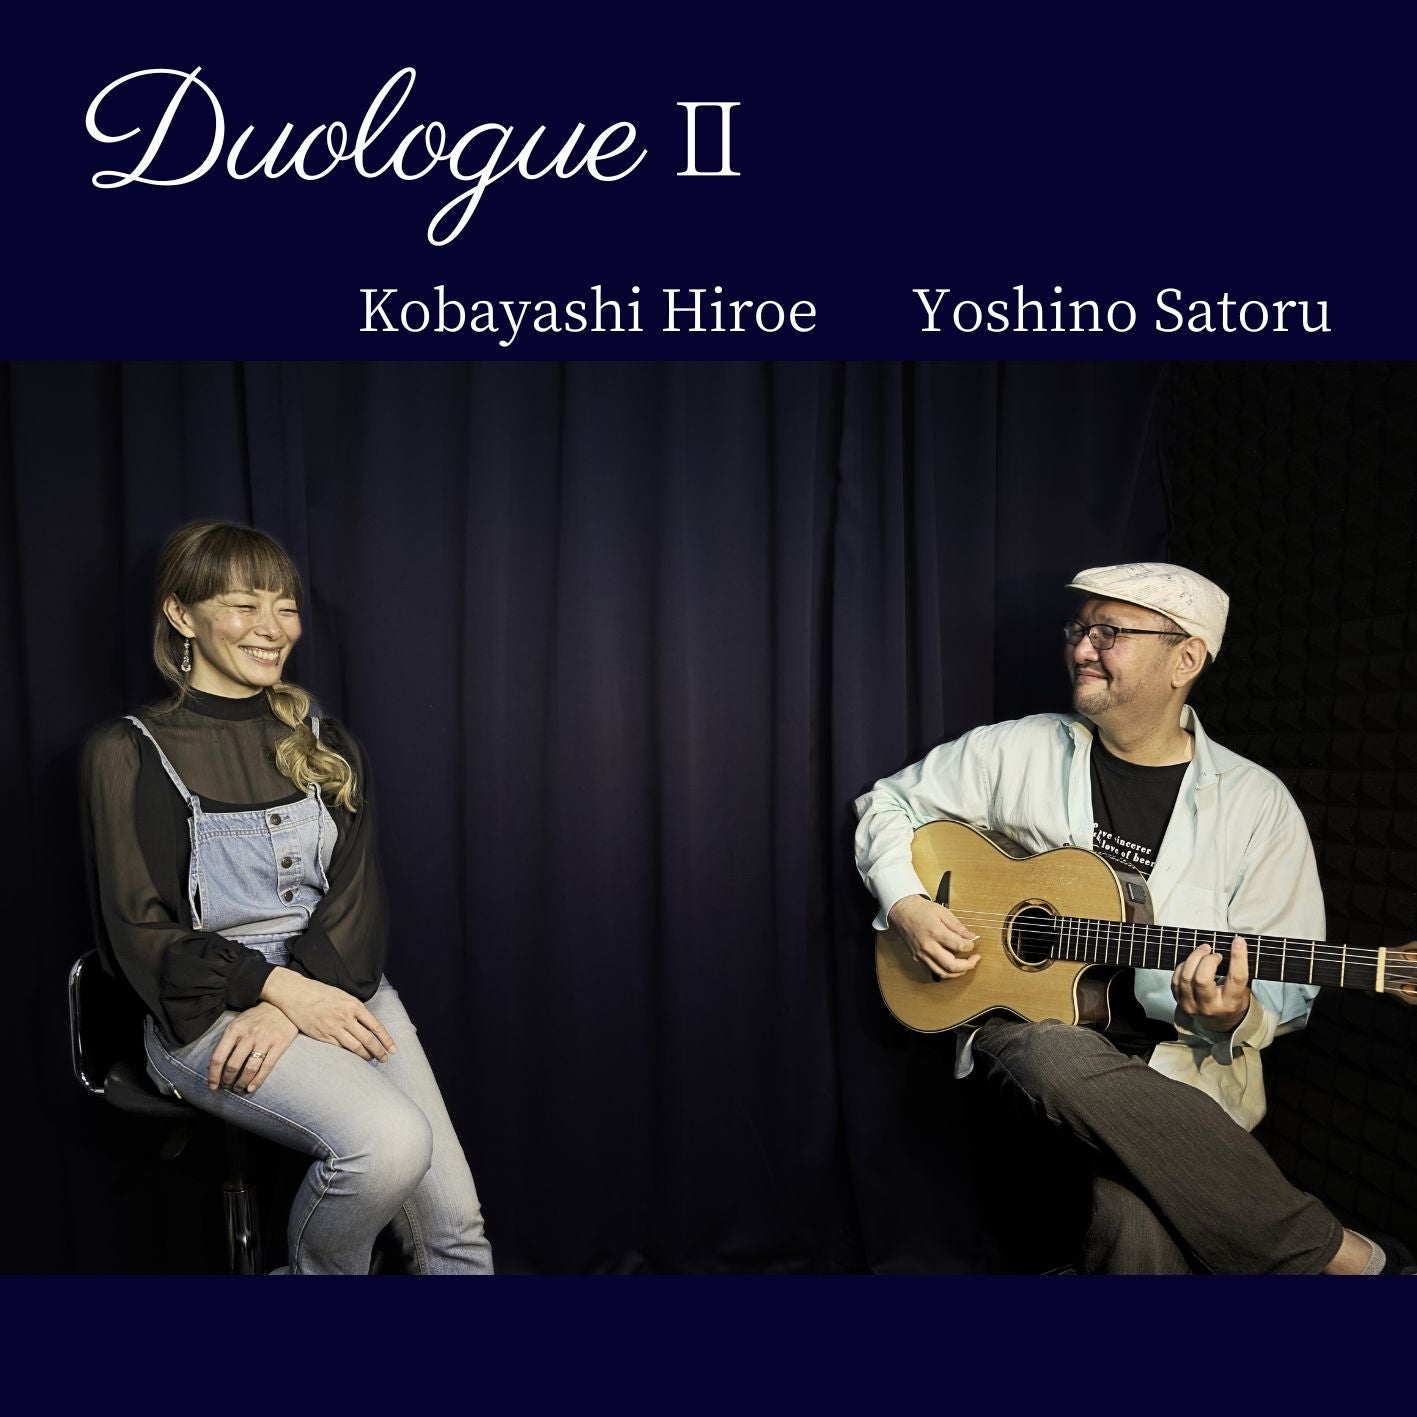 Yoshino Satoru - Hiroe Kobayashi ワンコイン 応援チケット